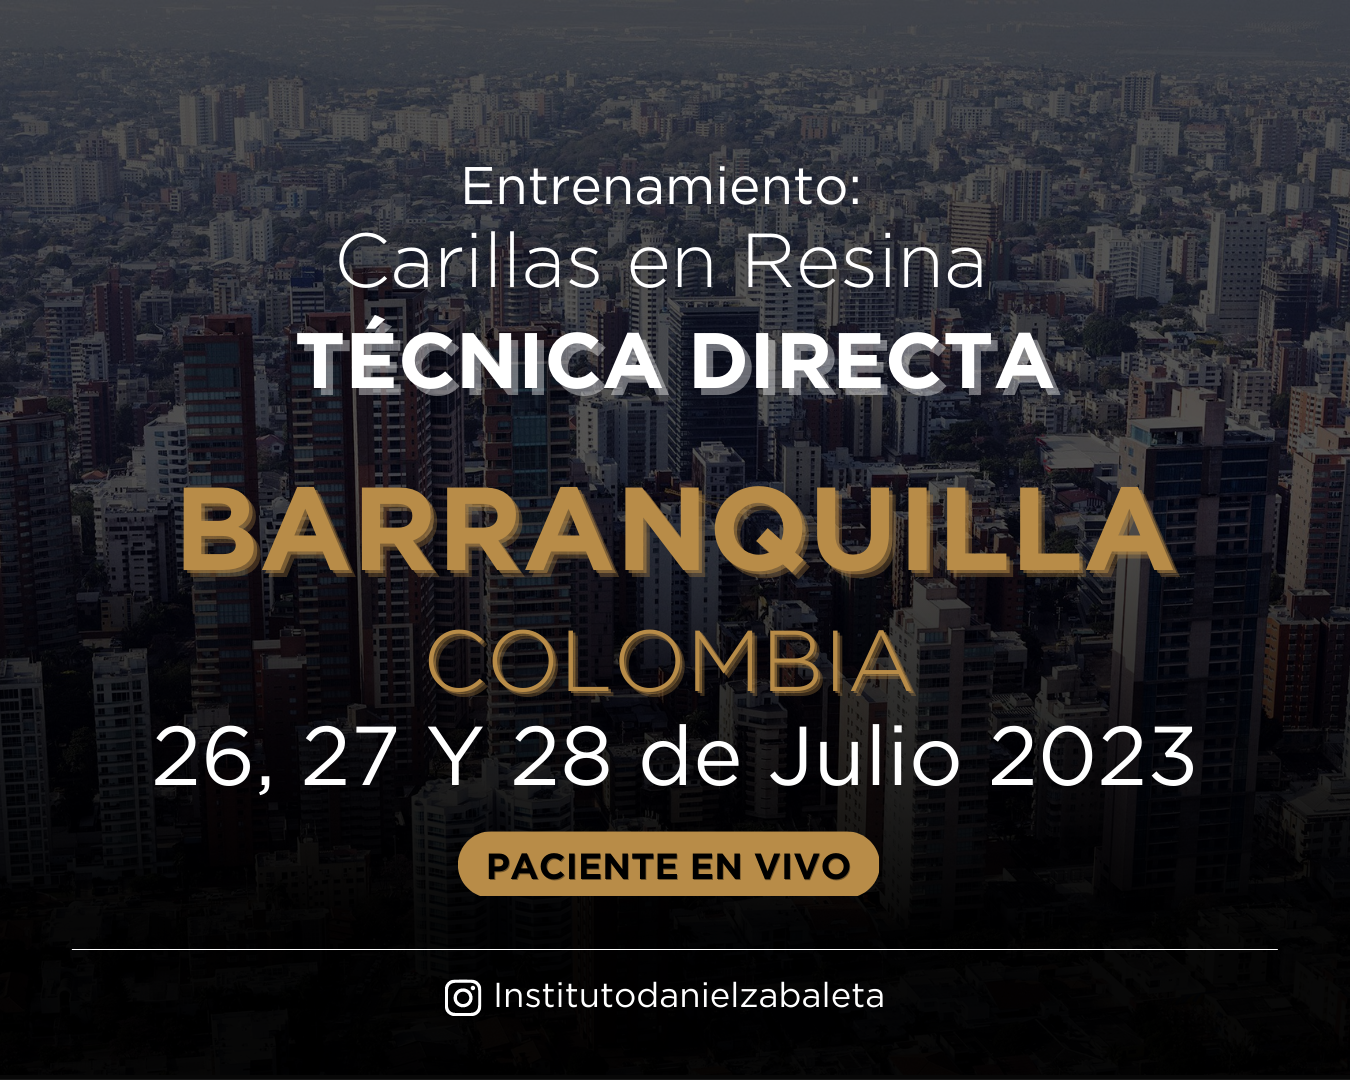 Website Entrenamiento Barranquilla (1350 × 1080 px)